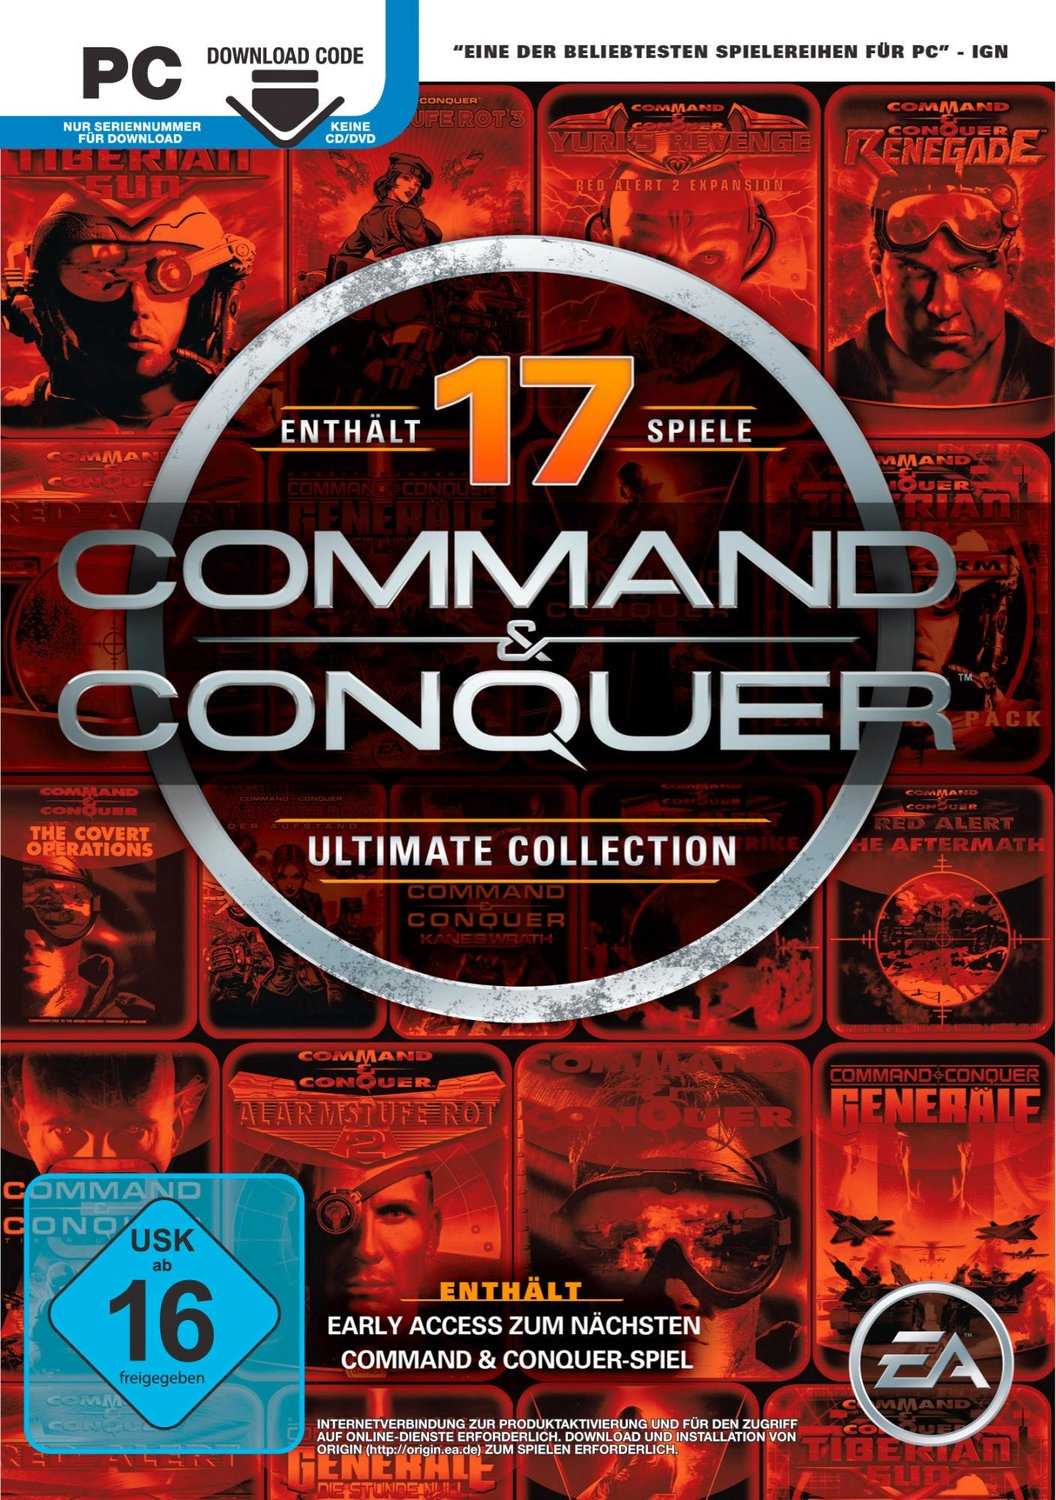 command conquer ultimate collection mit original im download fuer 459e statt 789e